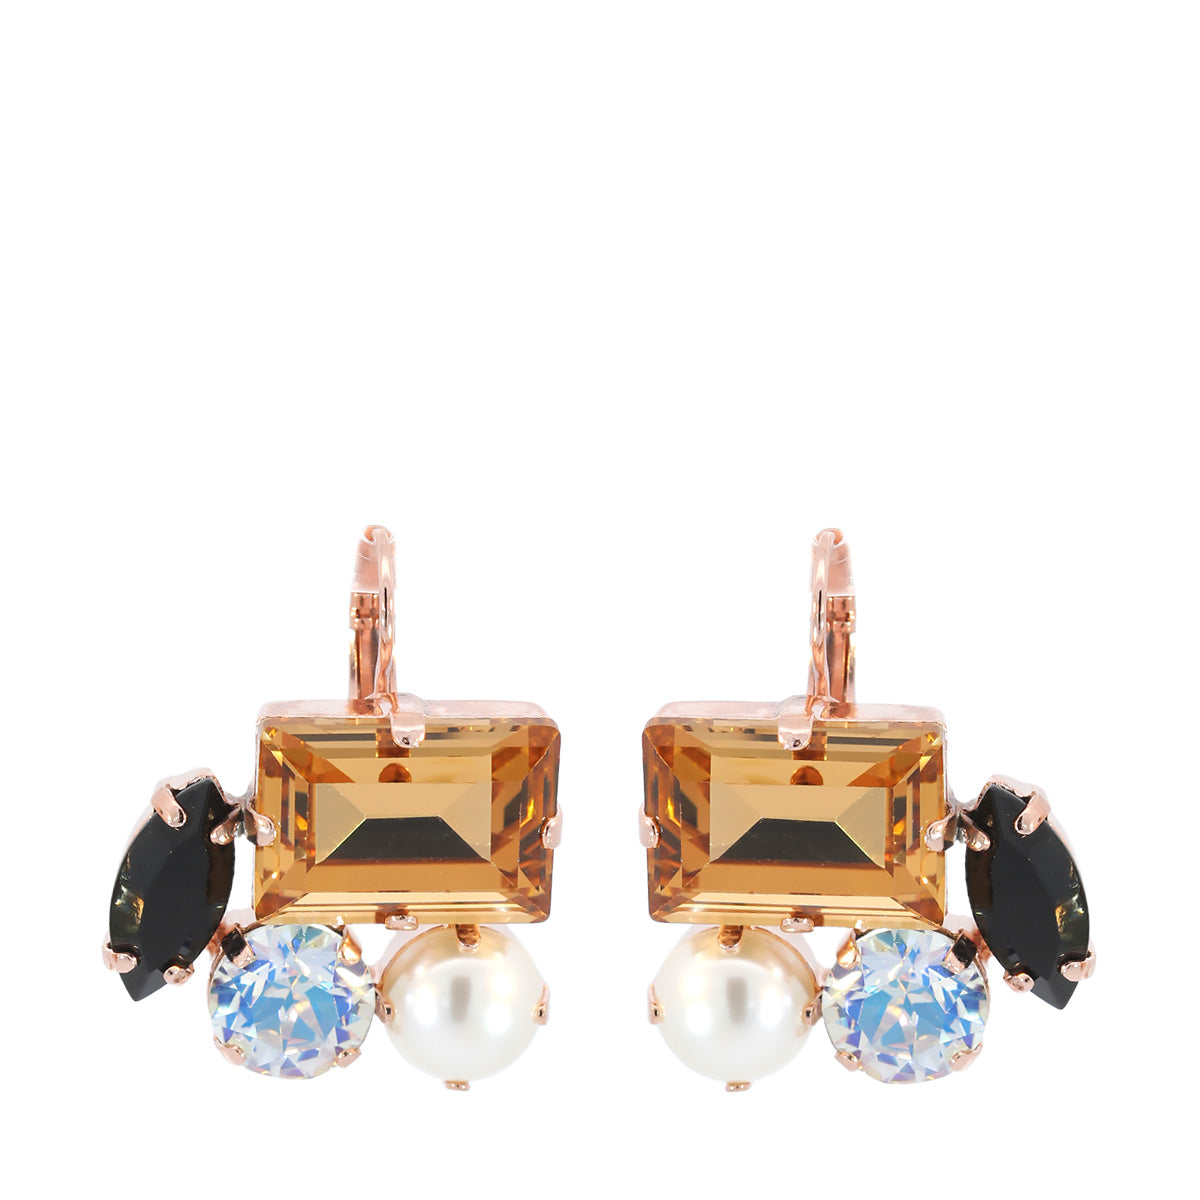 Mariana Venetian Serenade Earrings E-1529/3 40033